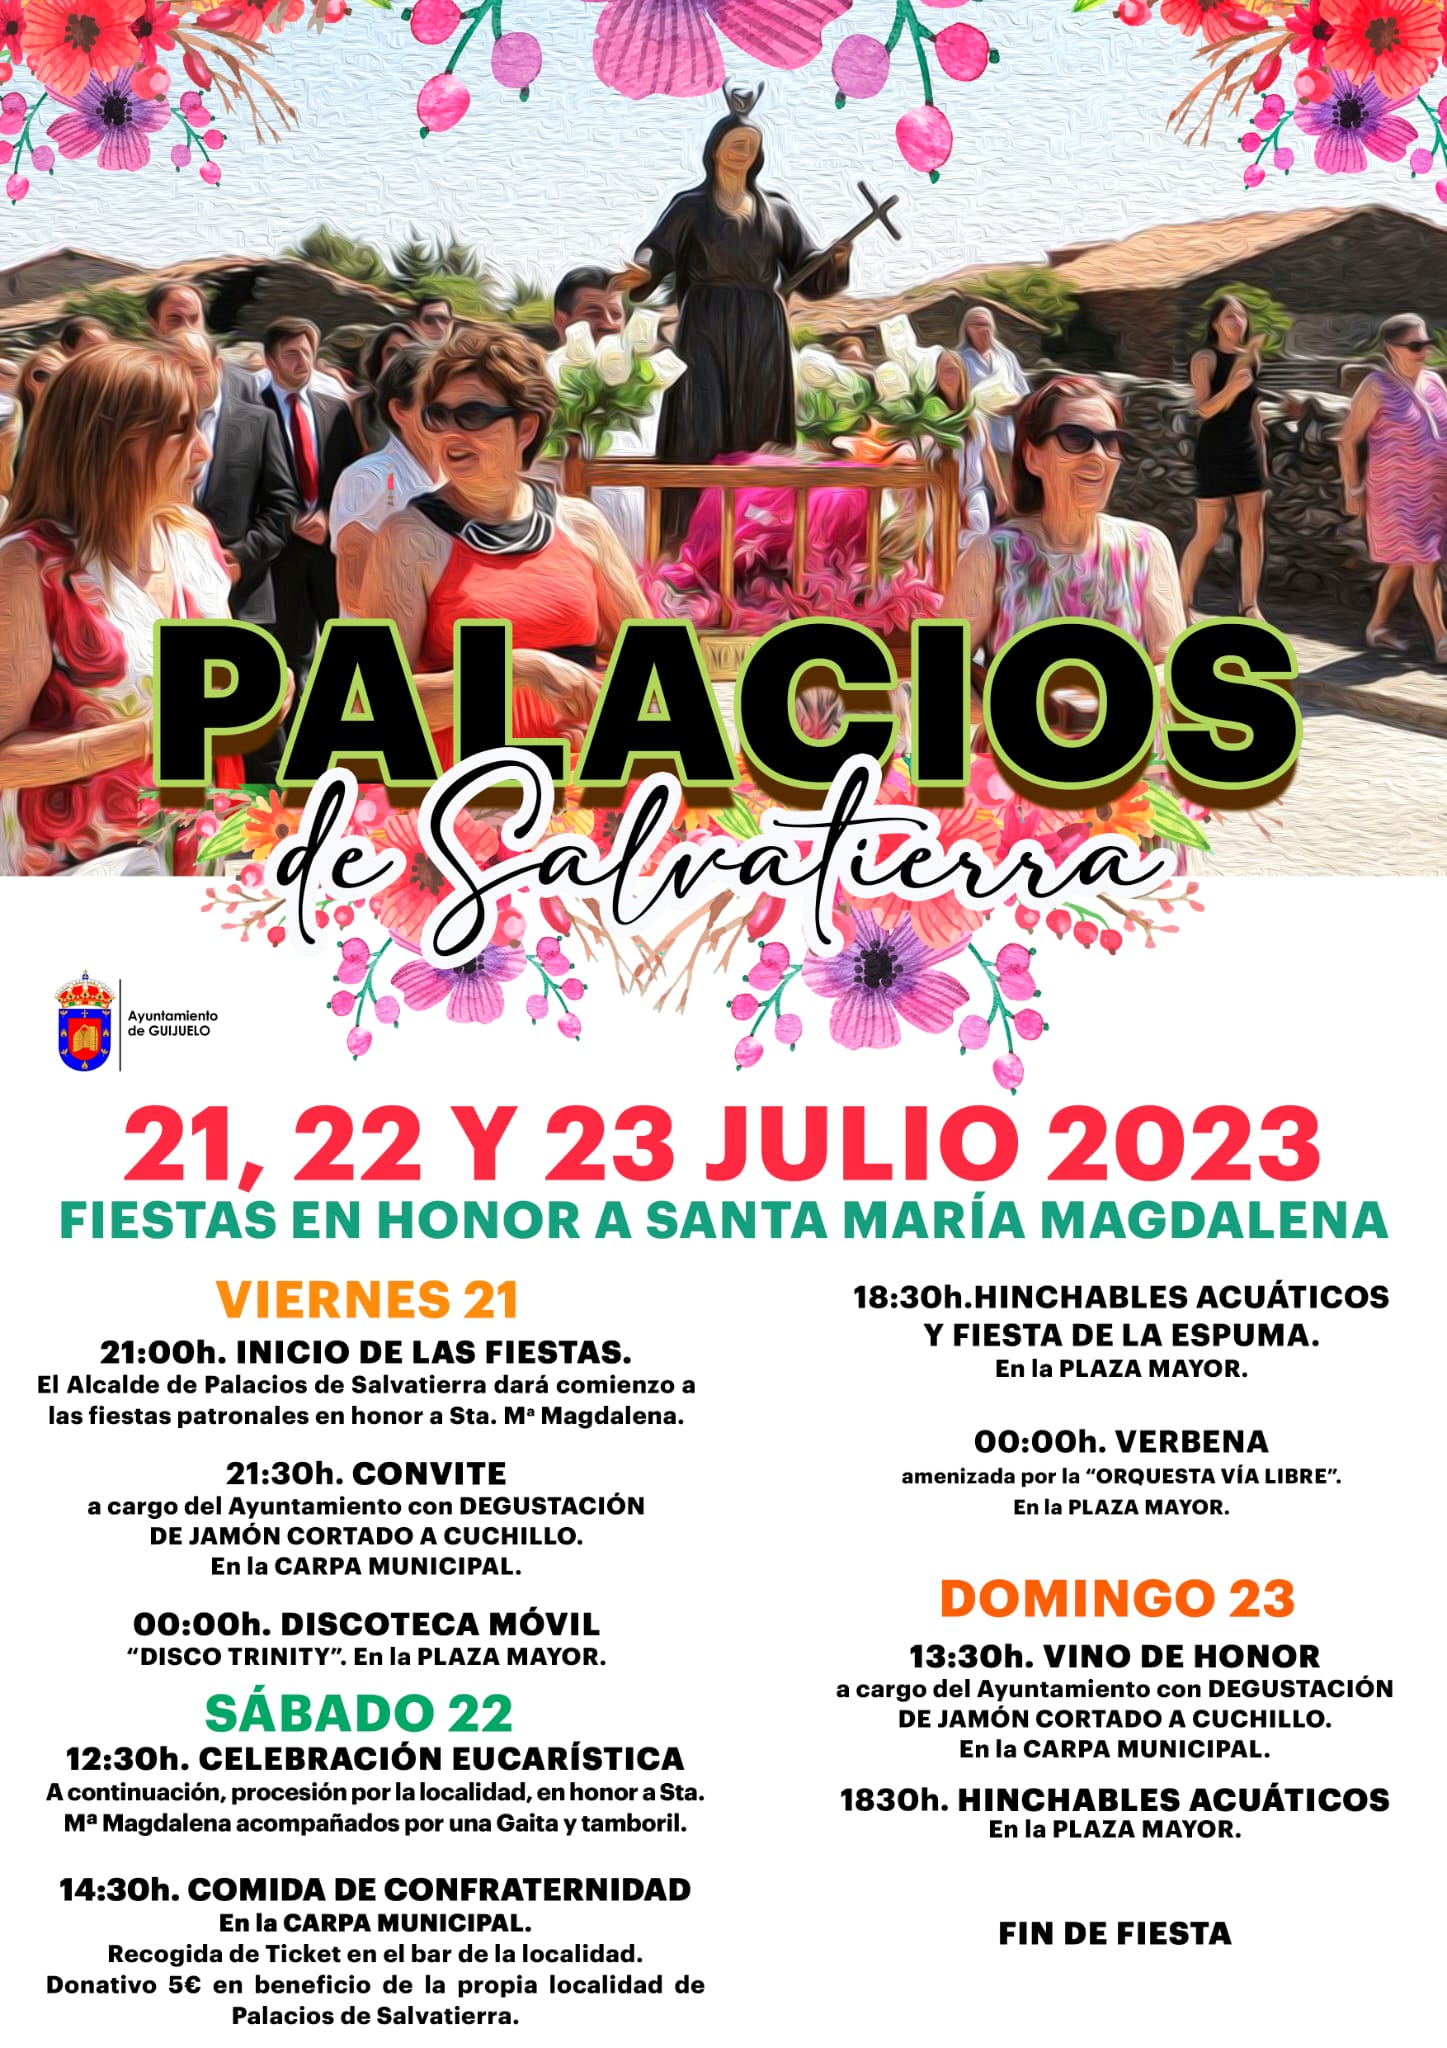 21, 22 y 23 JULIO Fiestas Santa María Magdalena PALACIOS